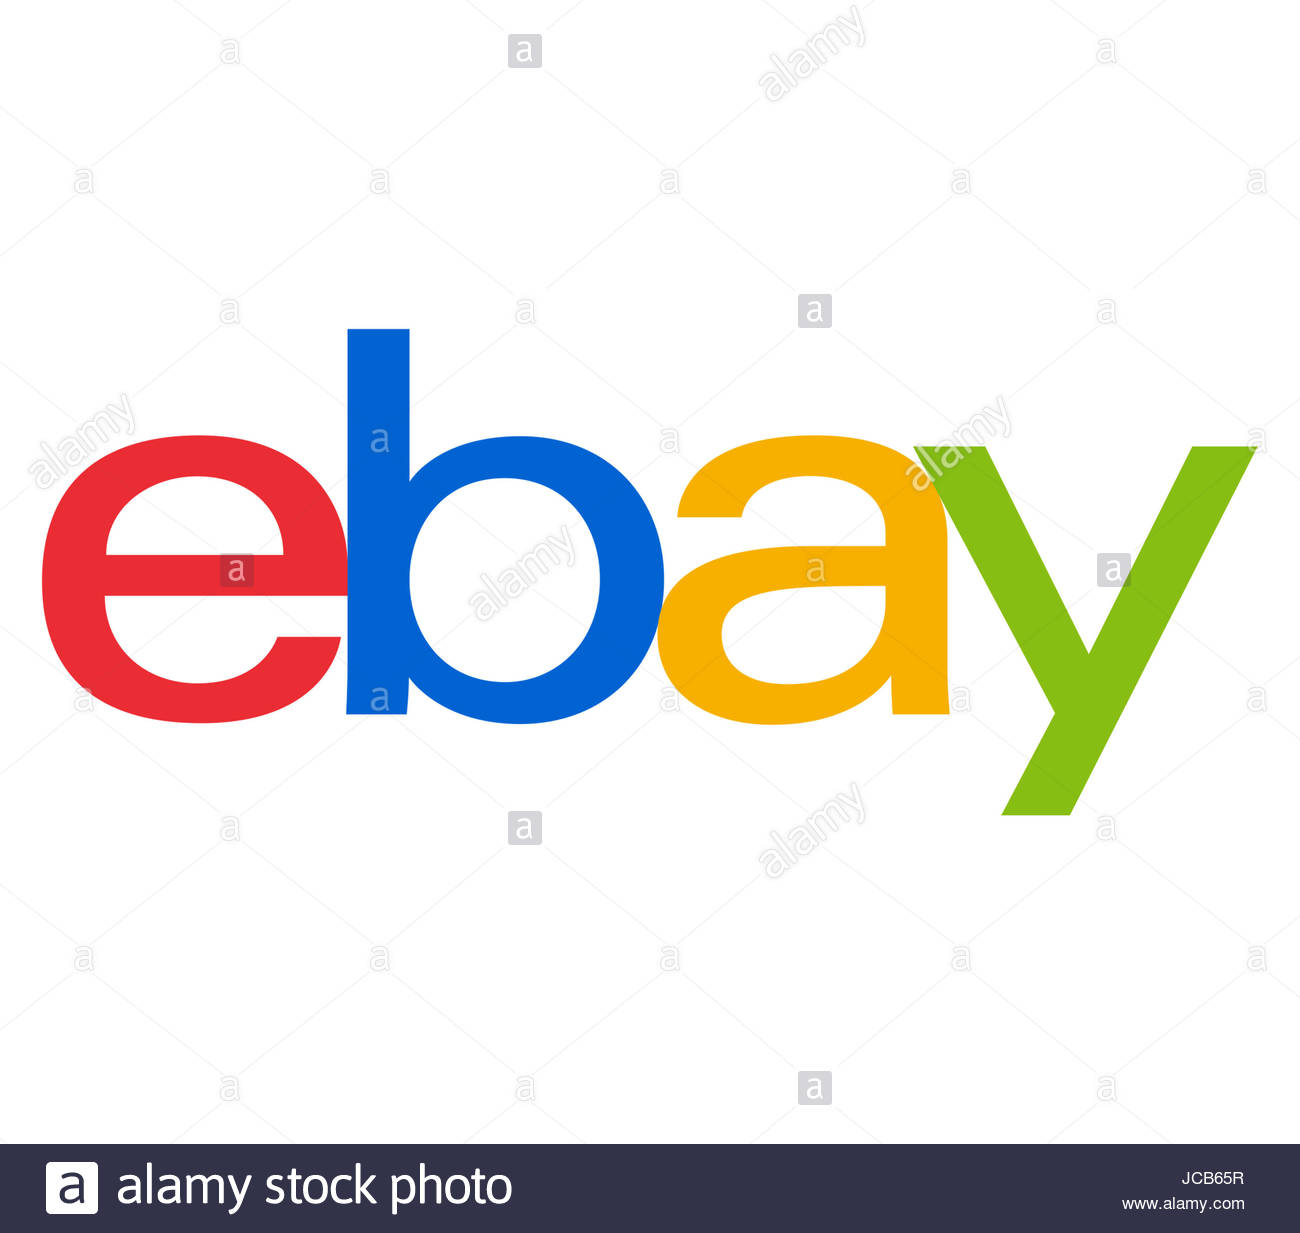 Ebay logo Icons | Free Download